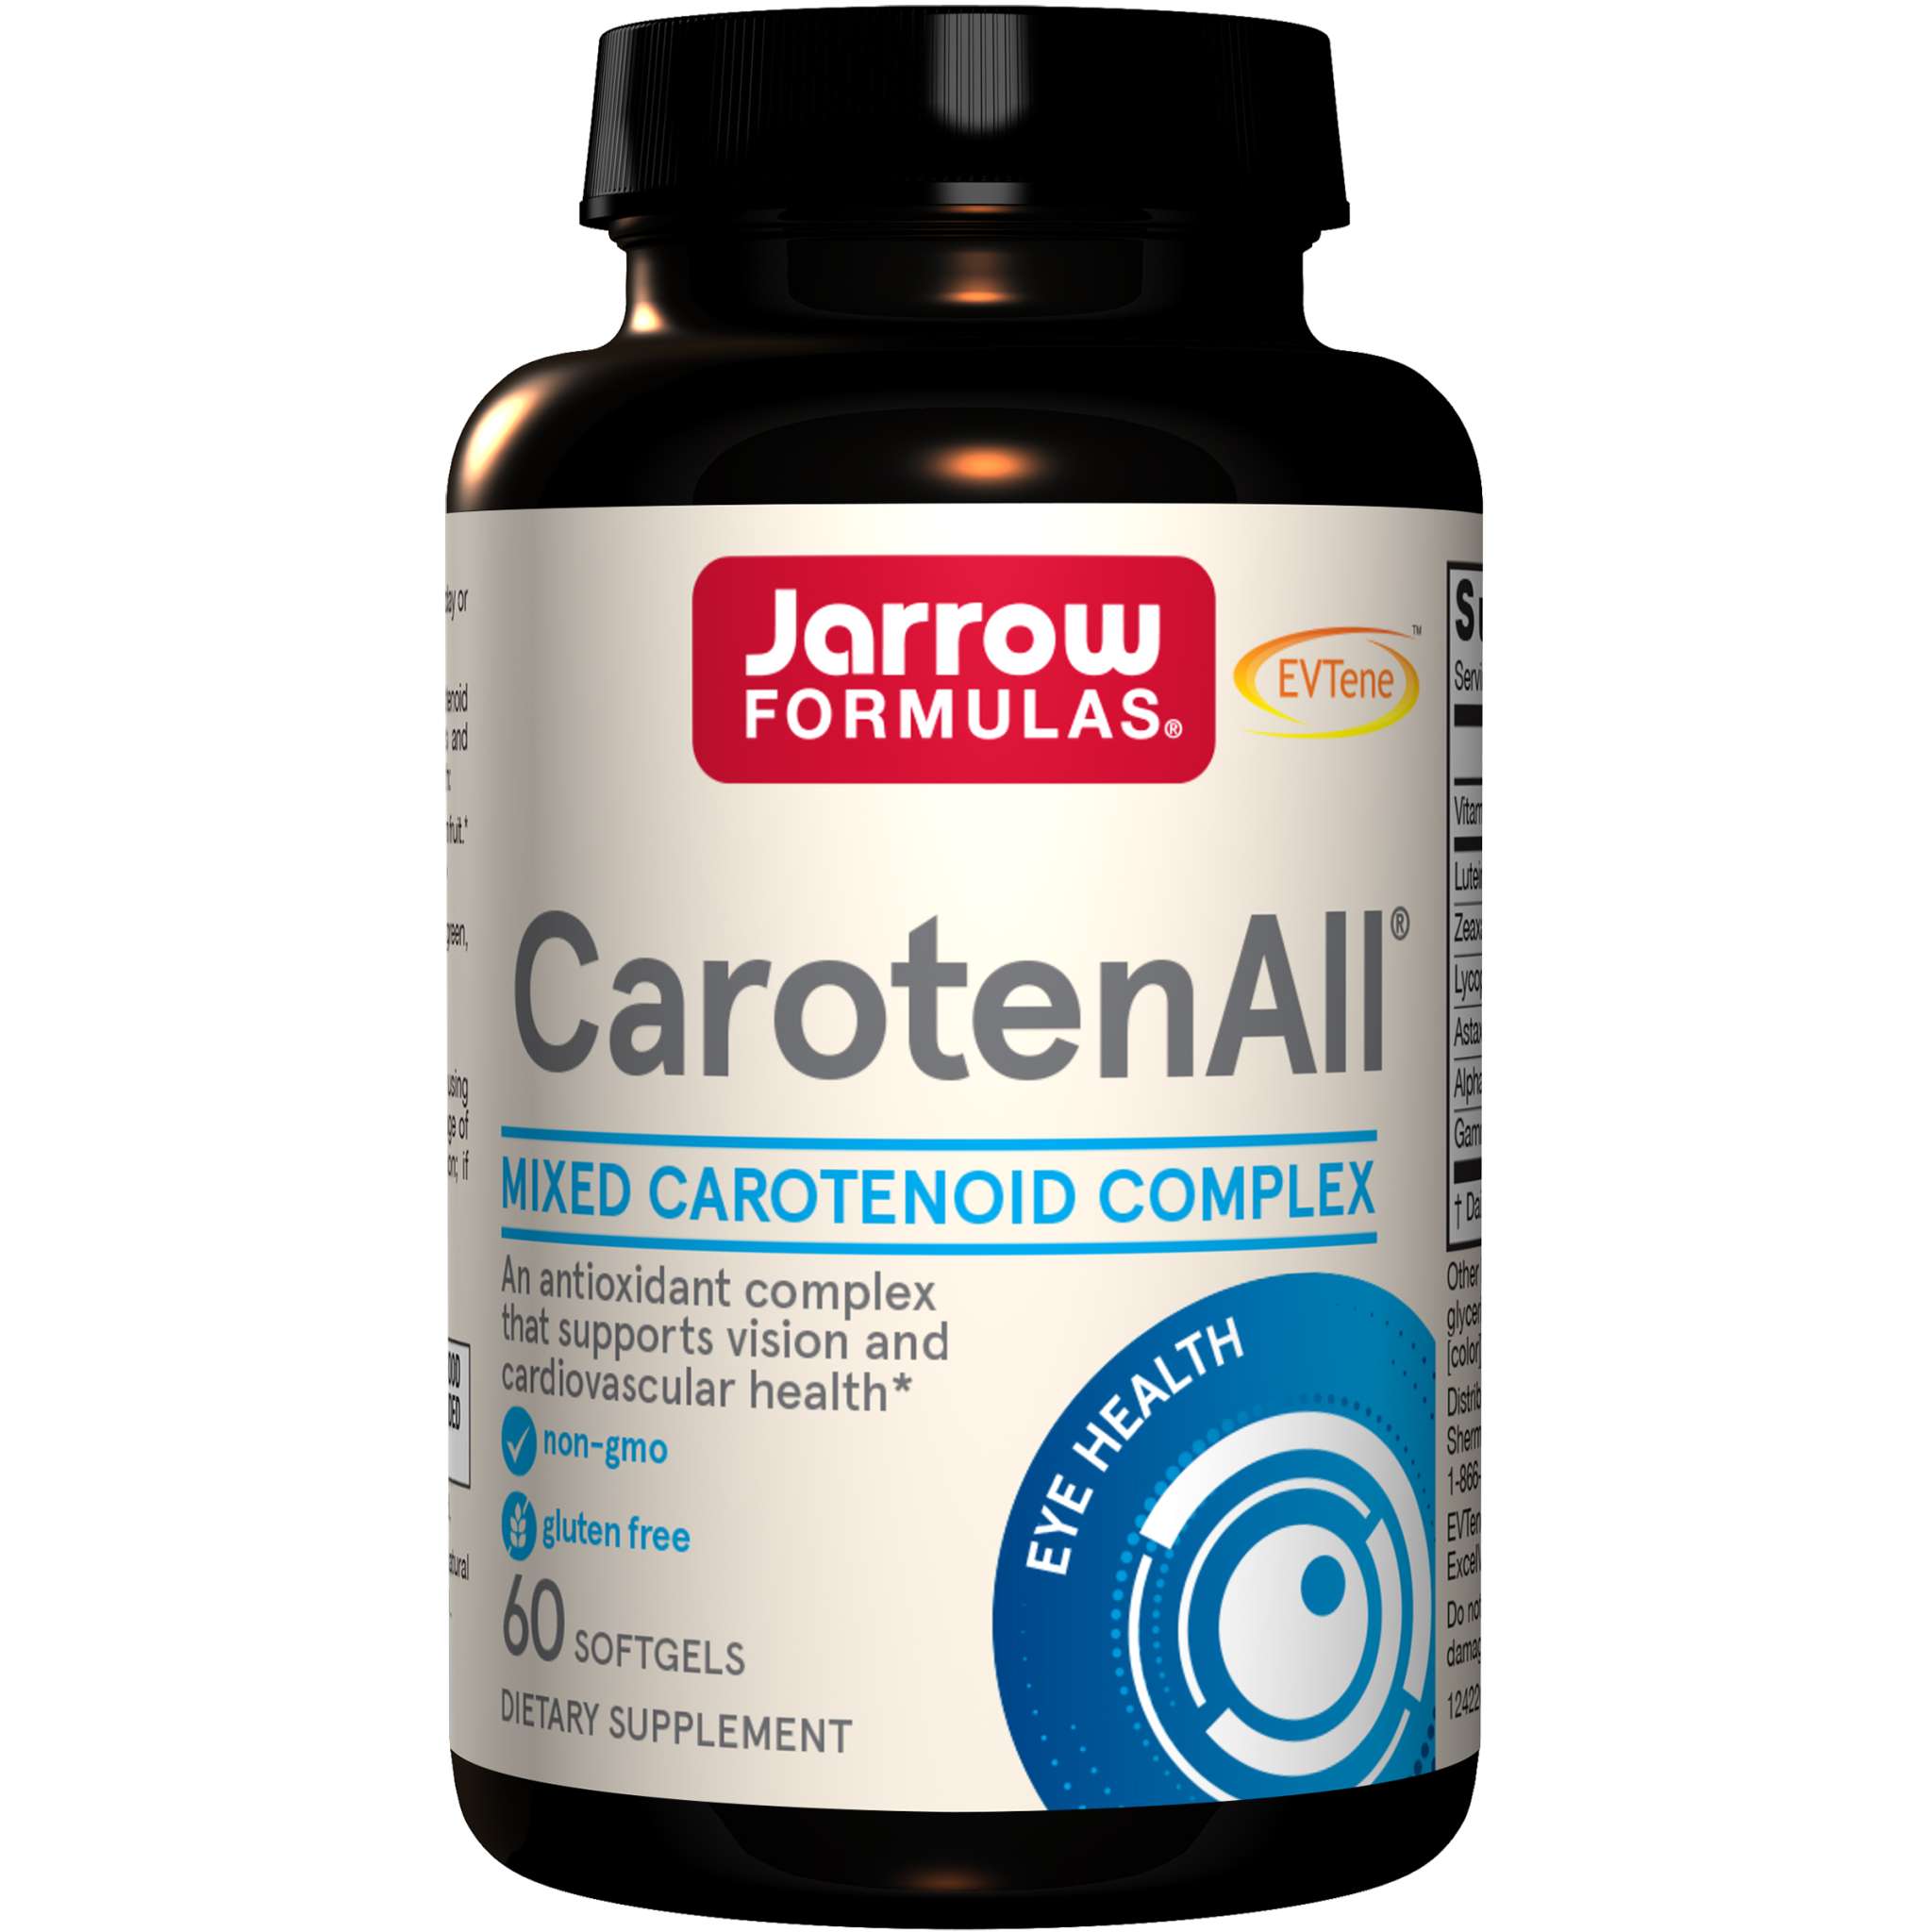 Jarrow Formulas - Carotenall